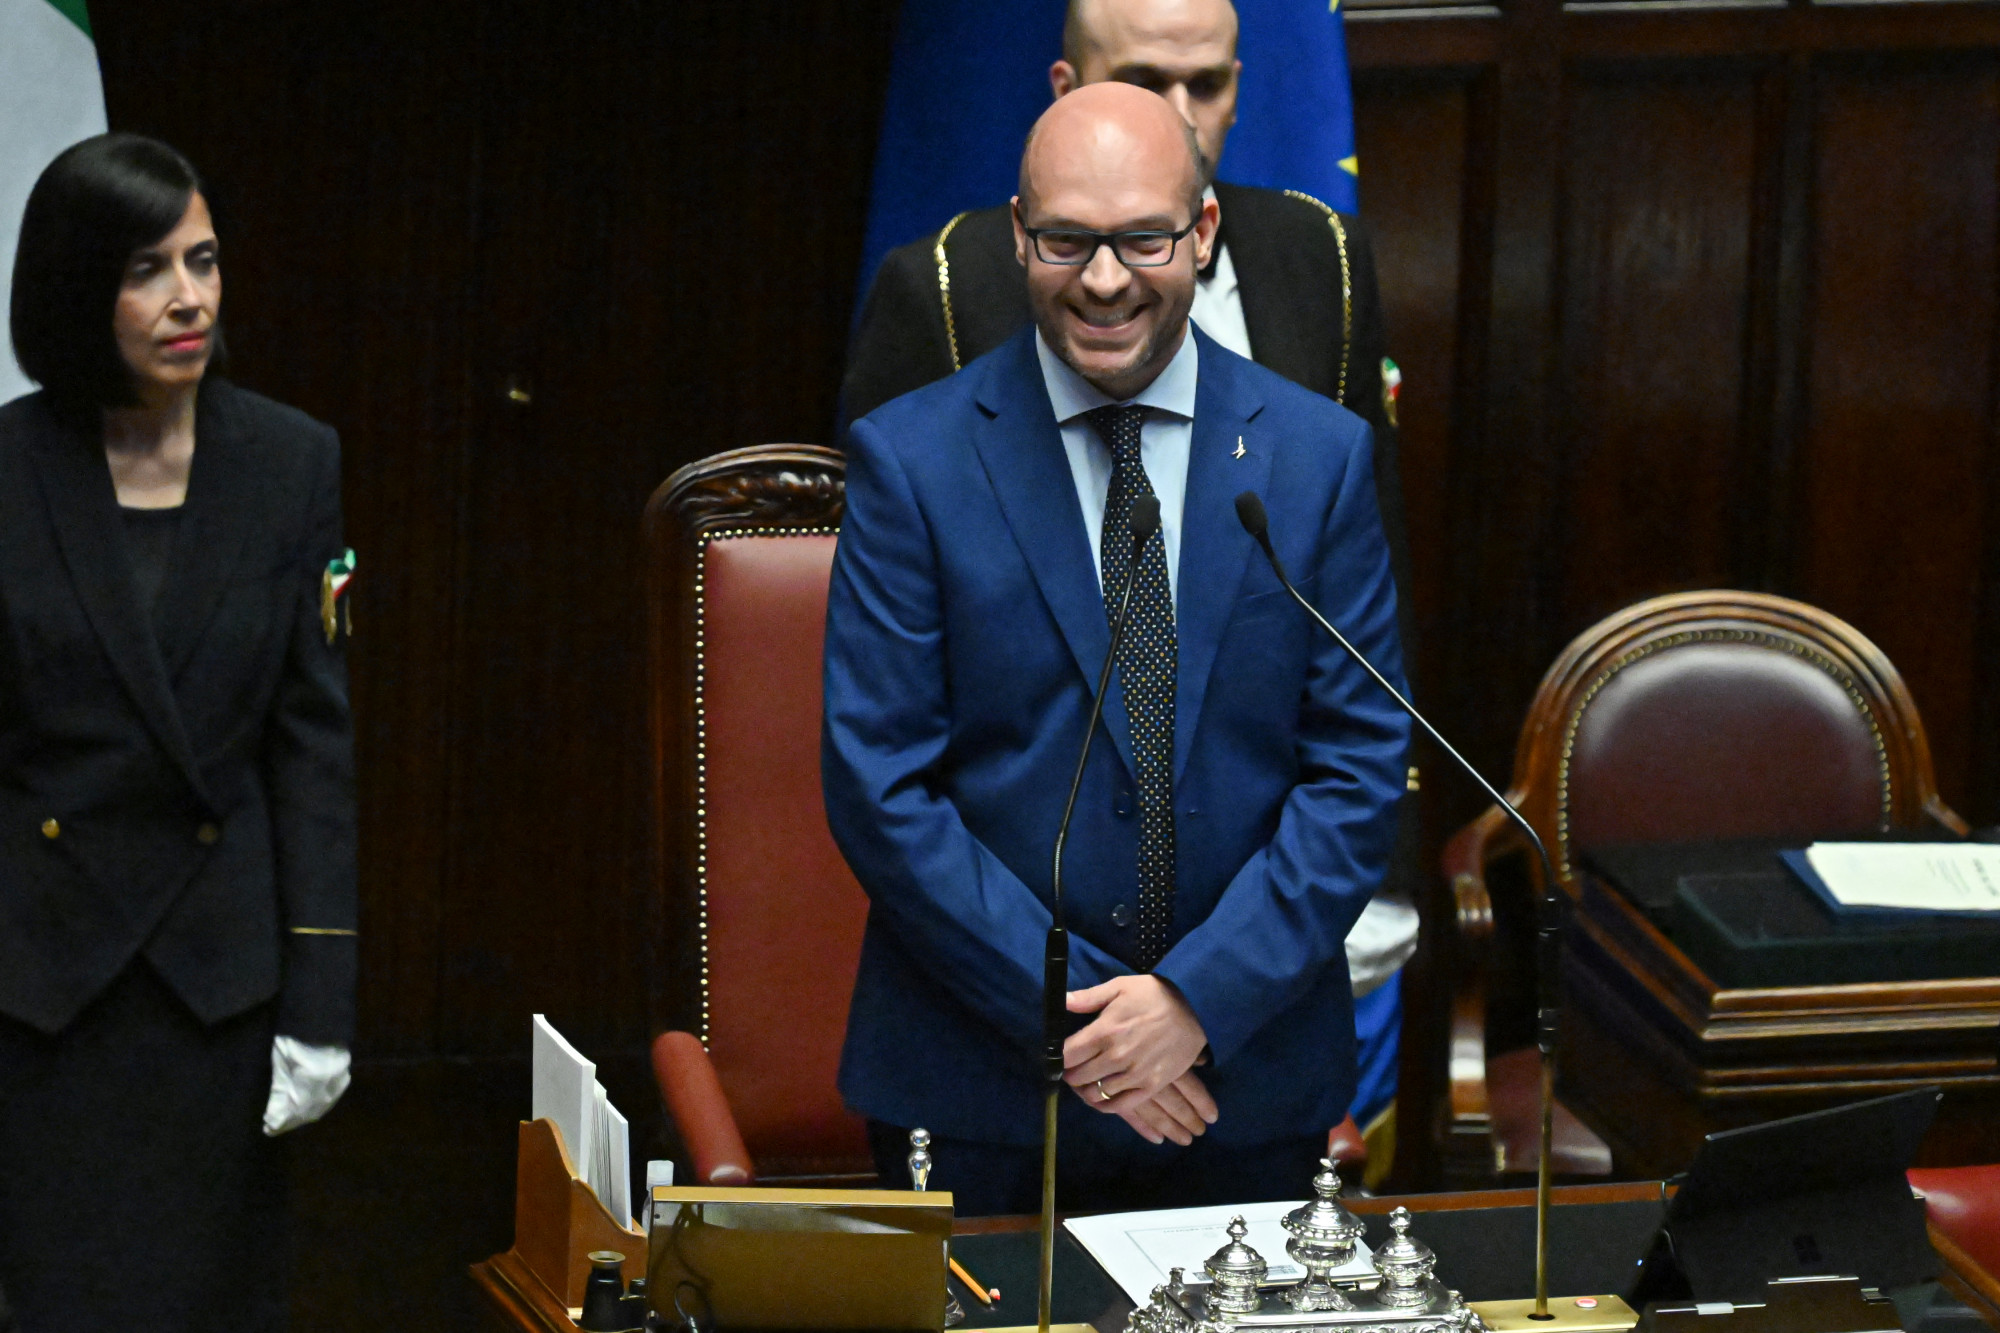 Oroszbarát, meleg- és abortuszellenes képviselő lett az olasz parlament alsóházának elnöke